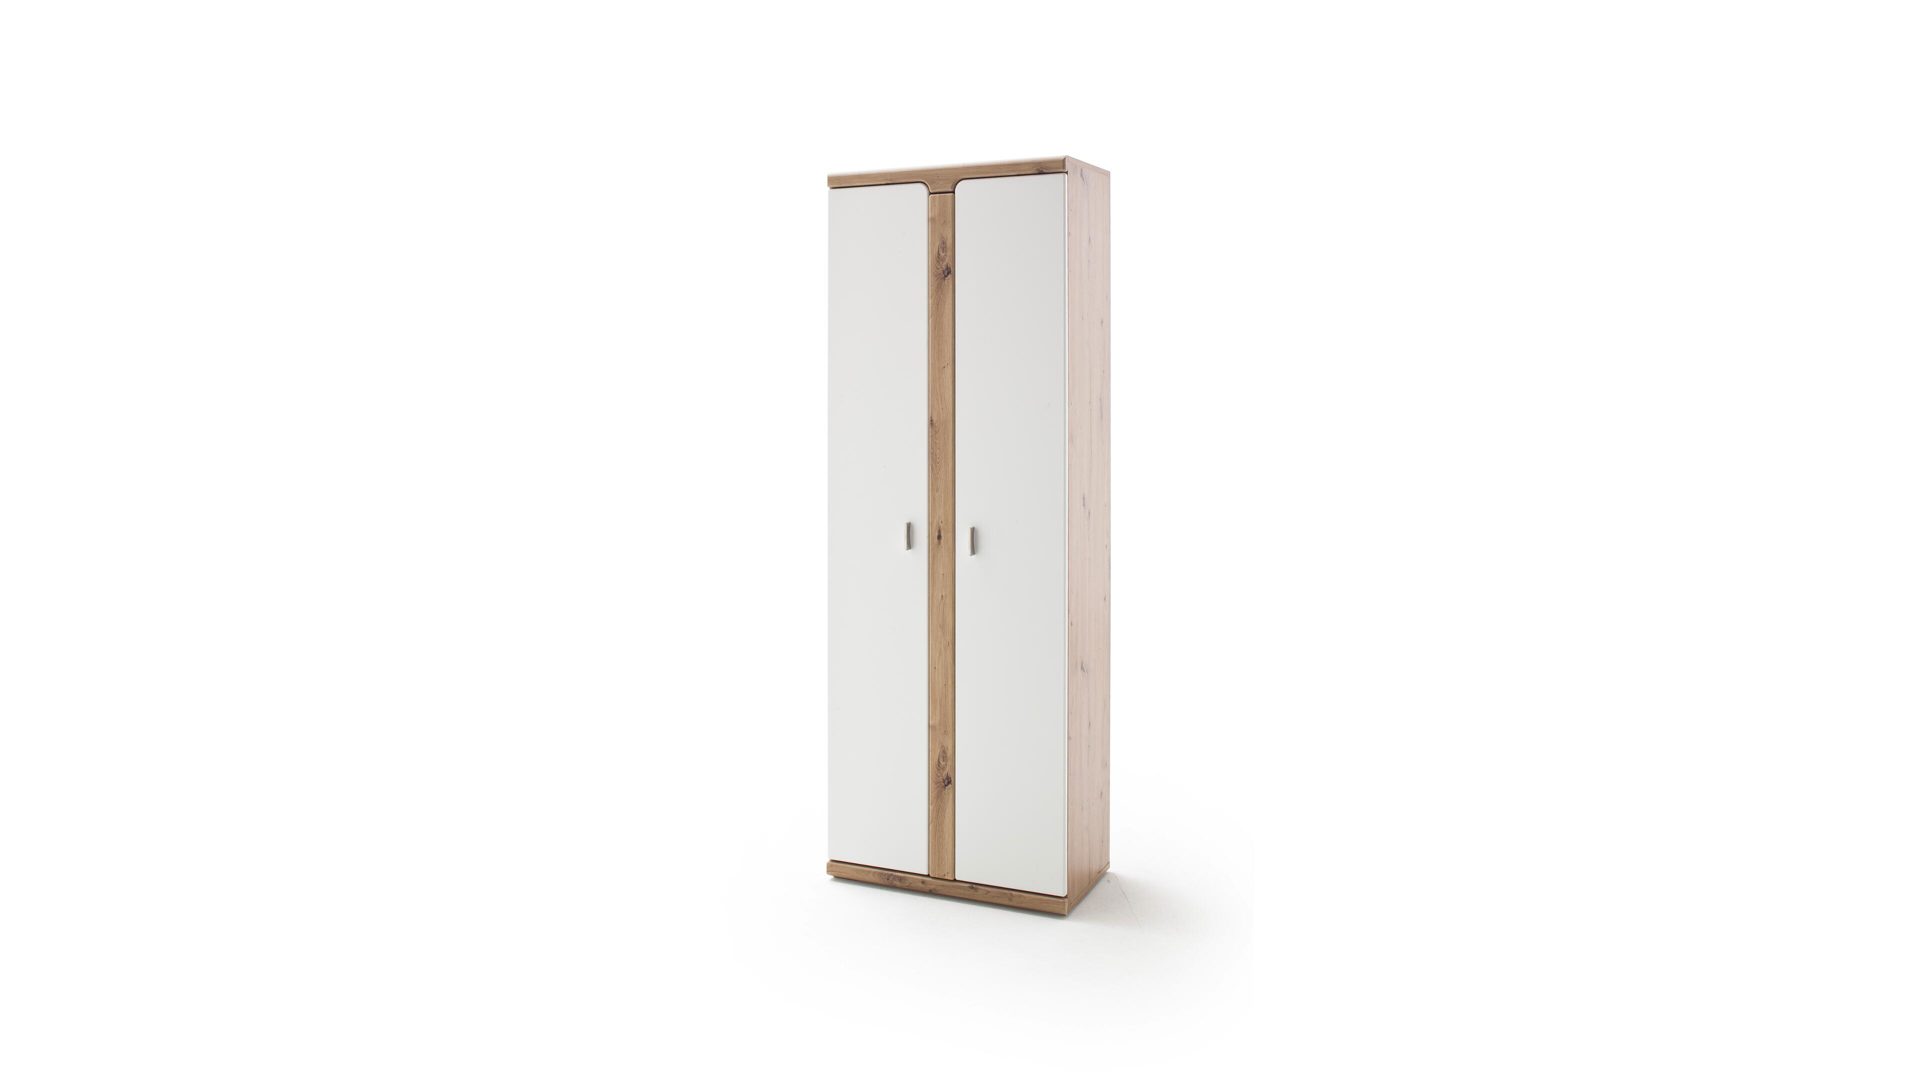 Garderobenschrank Mca furniture aus Holz in Weiß Garderobenschrank weiße & balkeneichefarbene Kunststoffoberflächen – zwei Türen